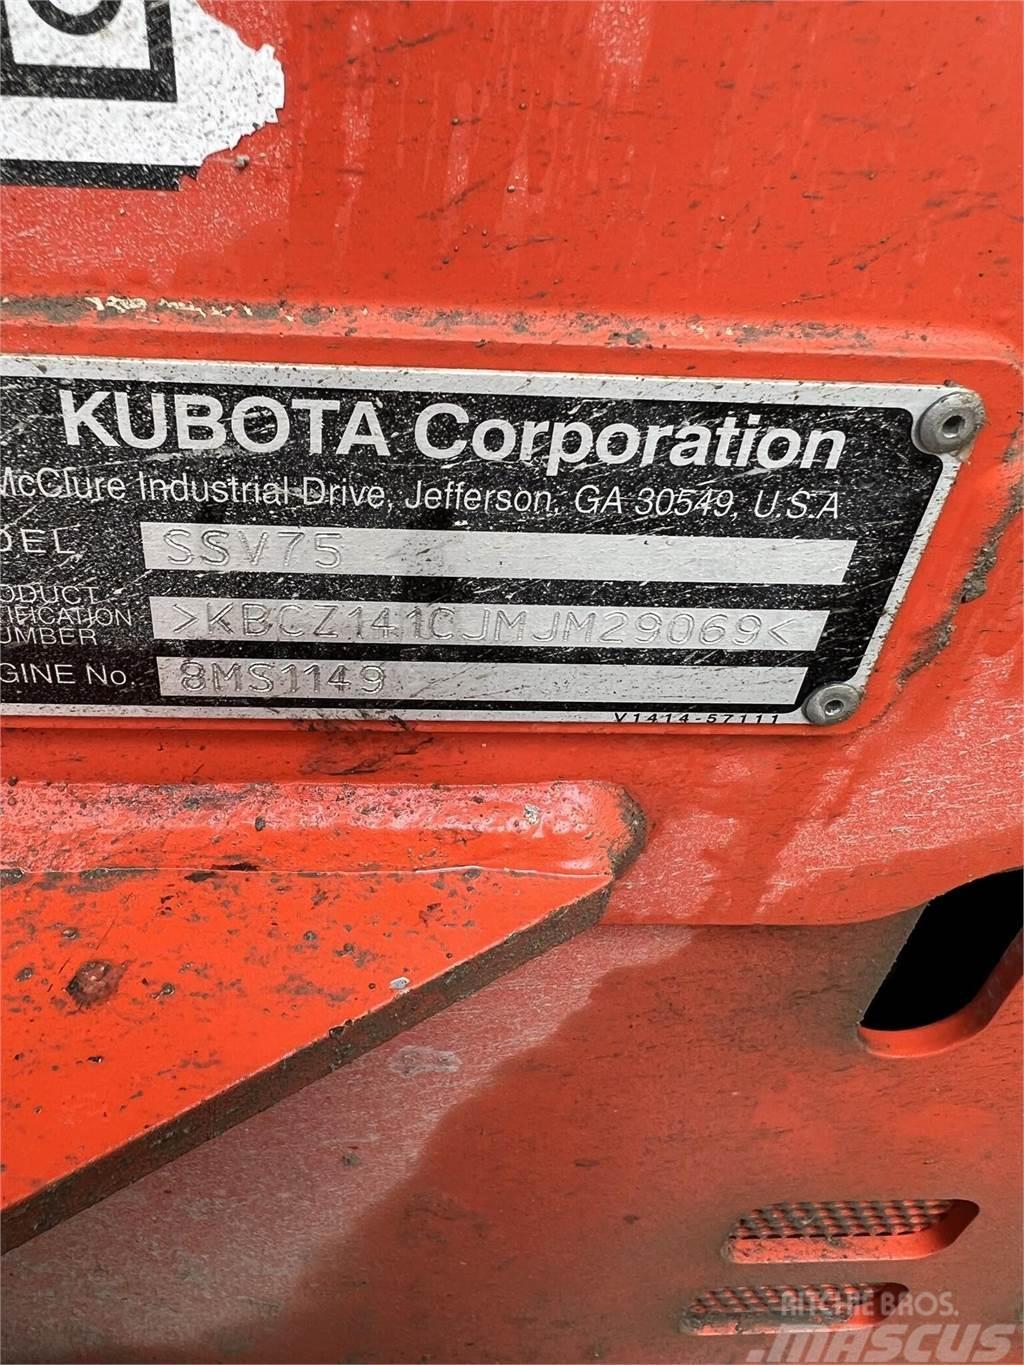 Kubota SSV75 Kompaktlader